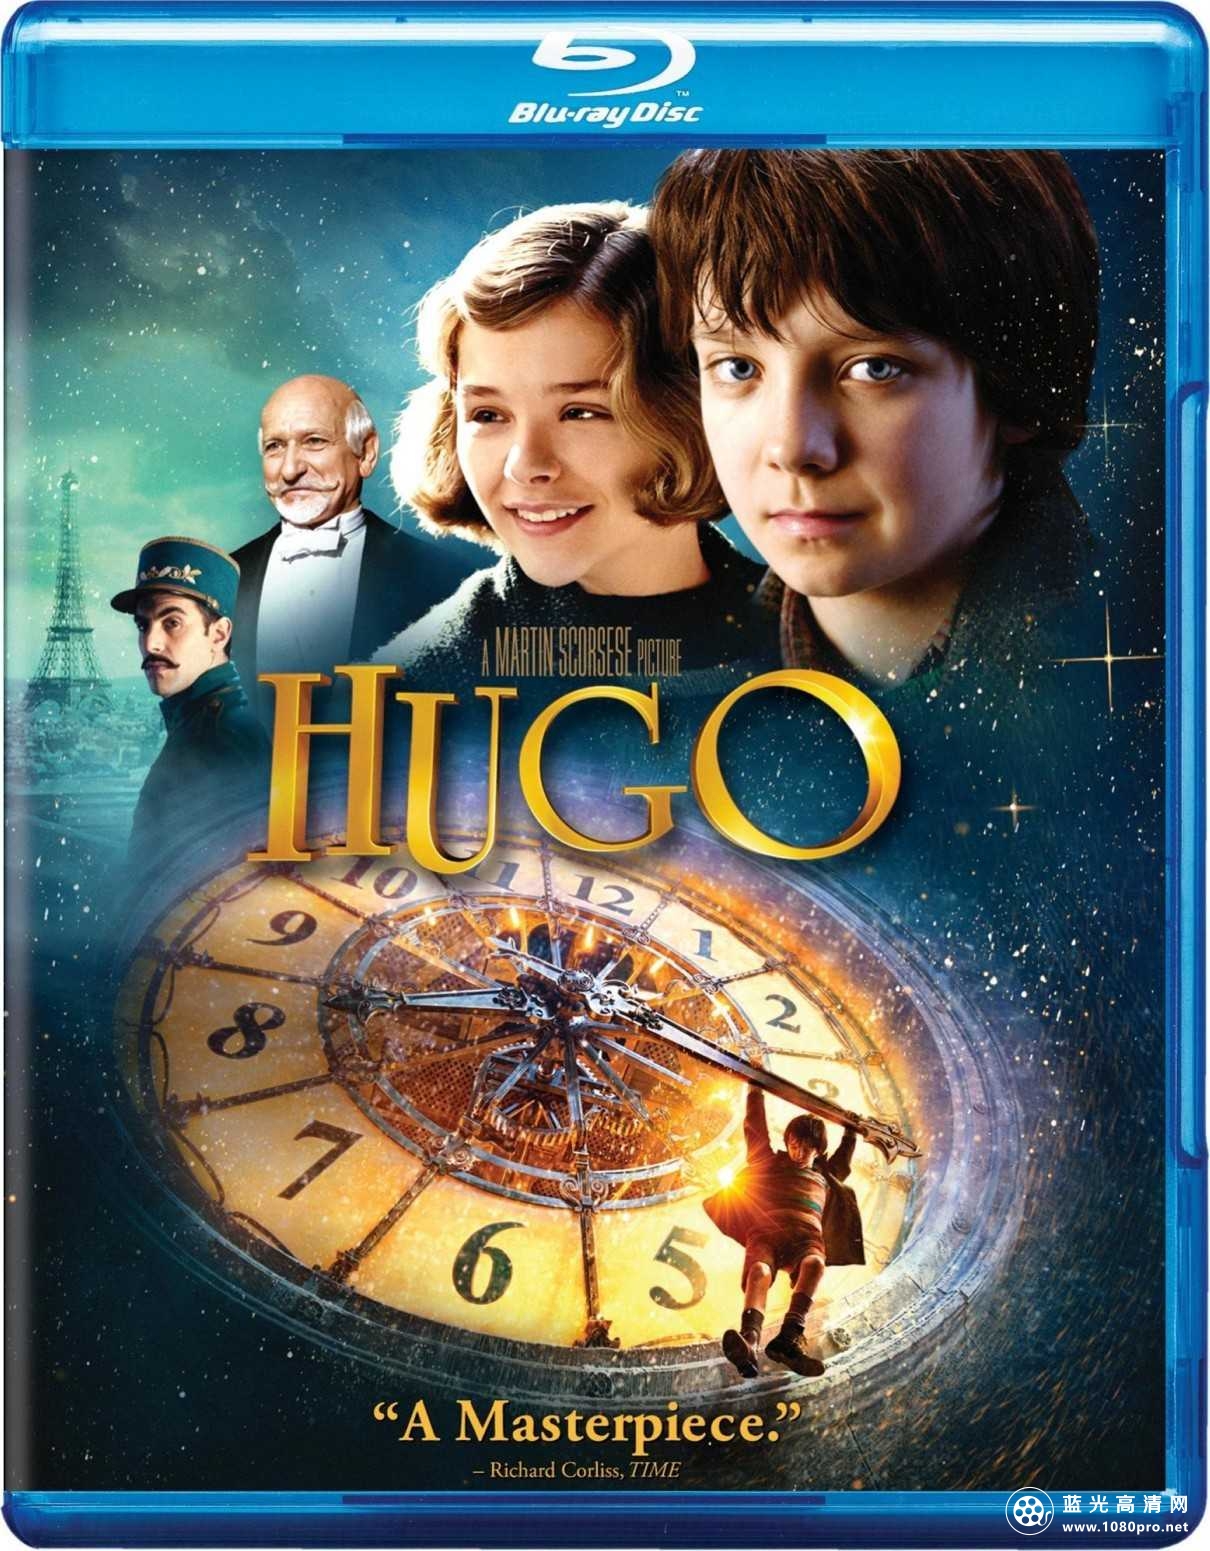 雨果/雨果·卡布里特/雨果的冒险 Hugo.2011.BluRay.720p.DTS.x264-CHD 6.5GB-1.jpg